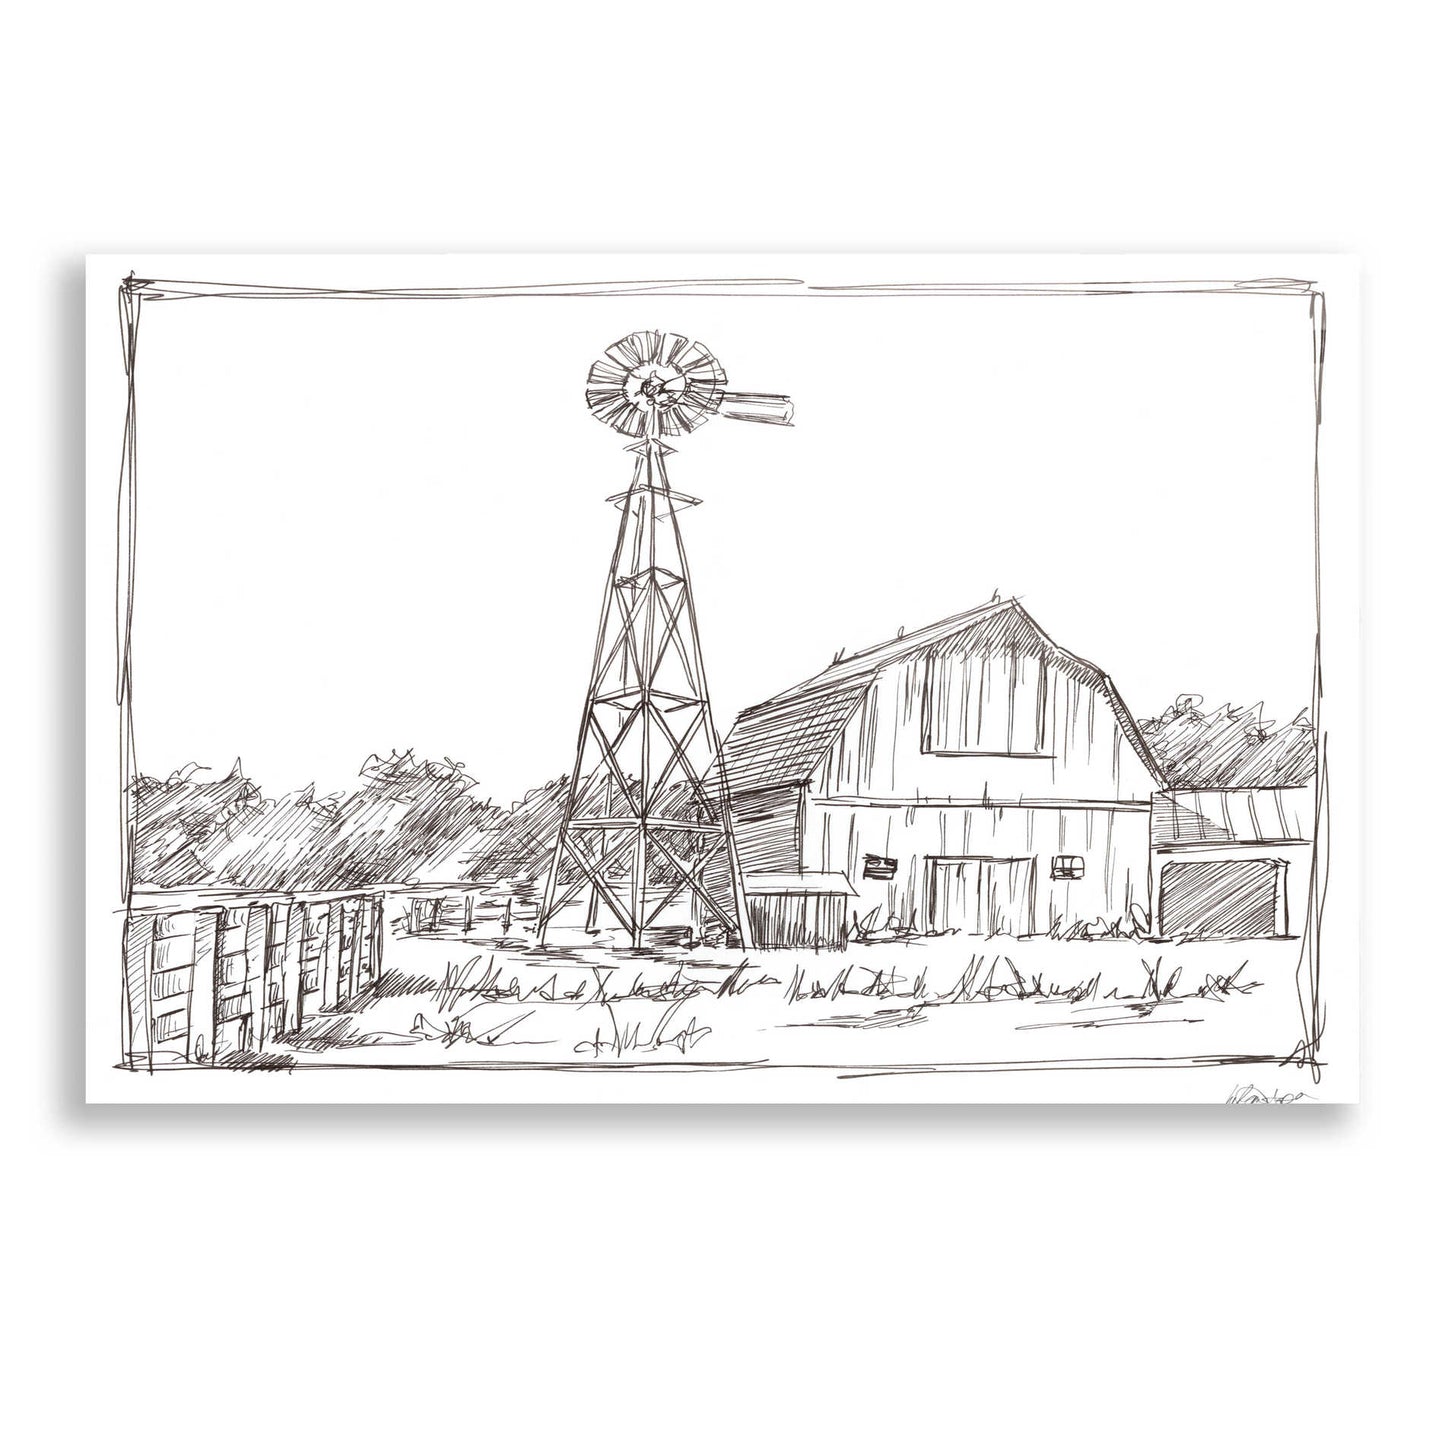 Epic Art 'Farm Sketch II' by Ethan Harper, Acrylic Glass Wall Art,16x12